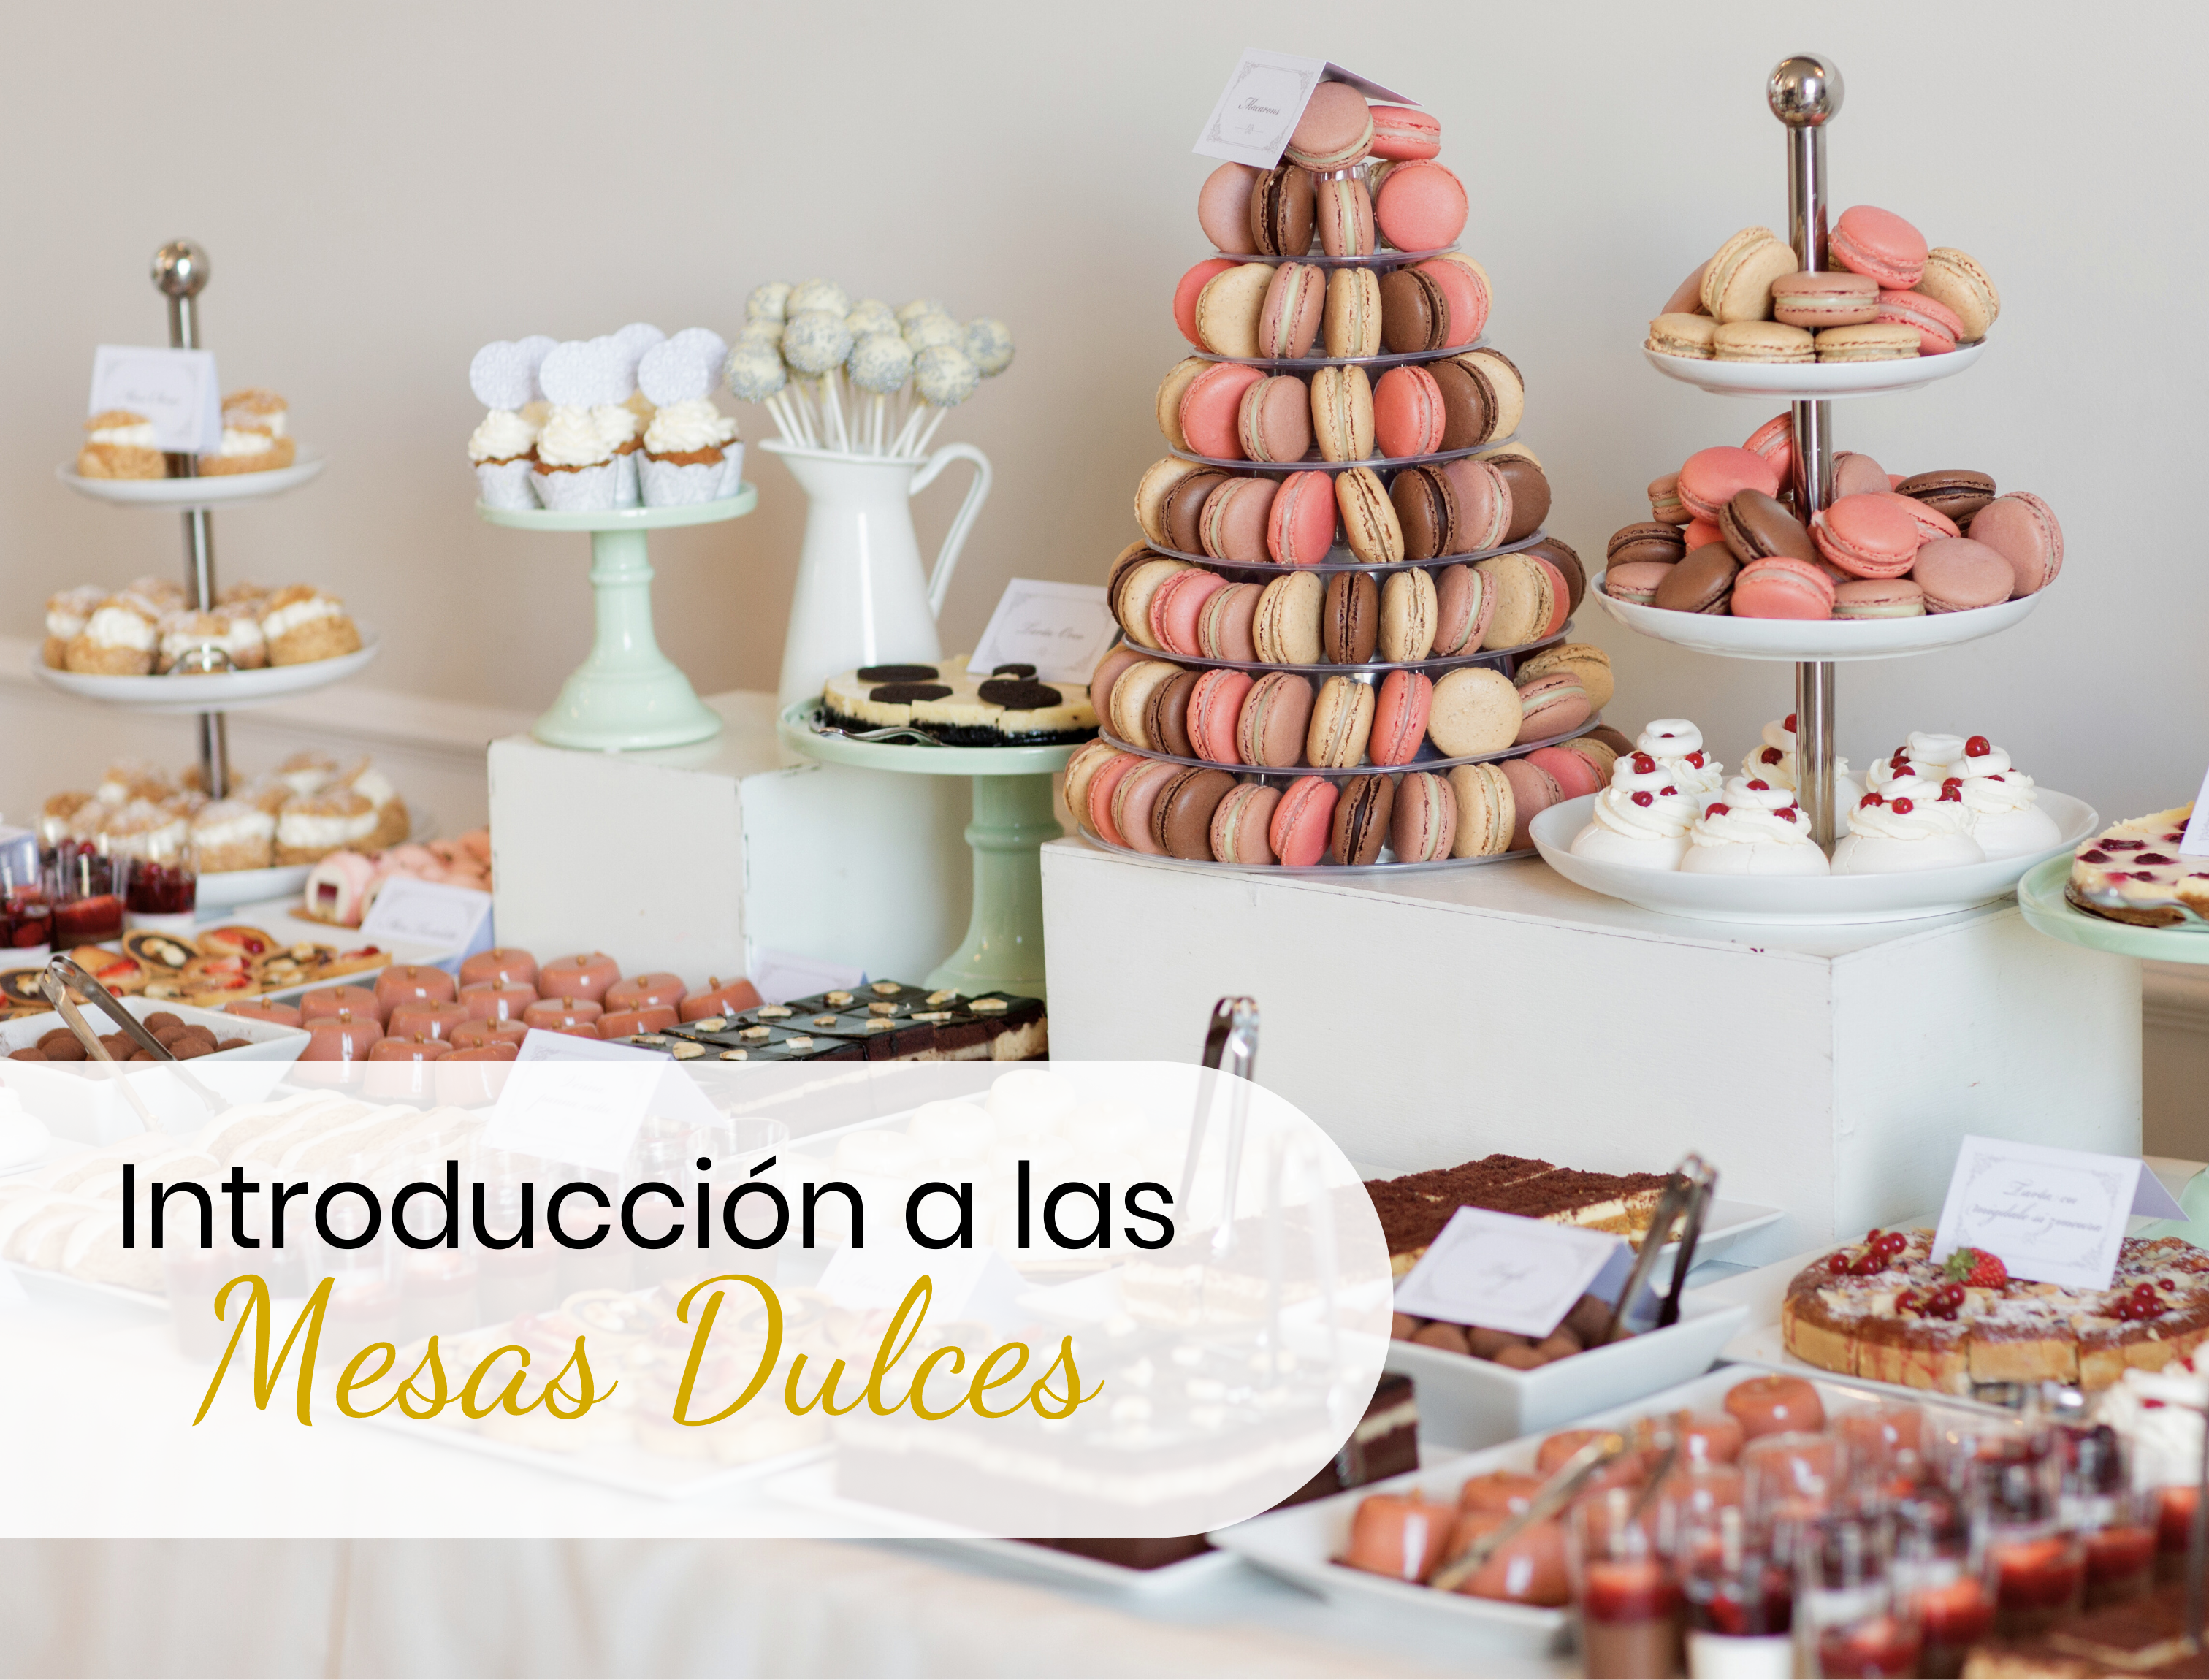 Qué son las mesas dulces y cómo prepararlas? – Leonardo Espinoza